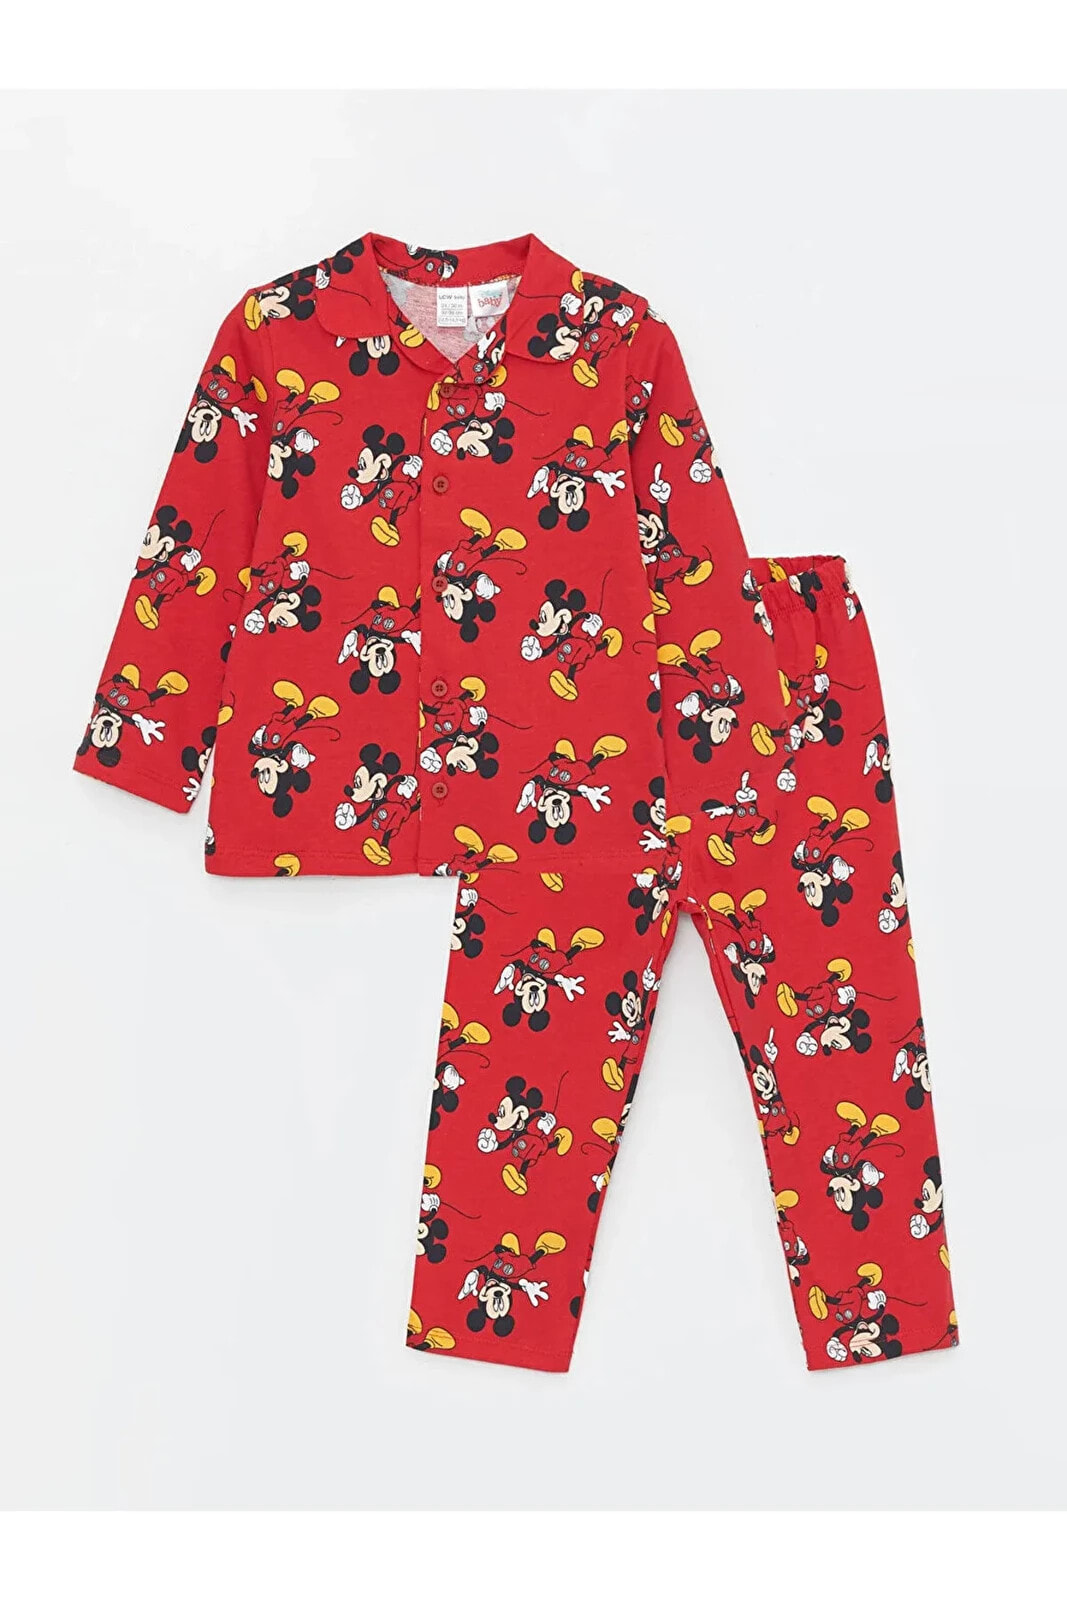 LCW baby Polo Yaka Uzun Kollu Mickey Mouse Baskılı Erkek Bebek Pijama Takımı